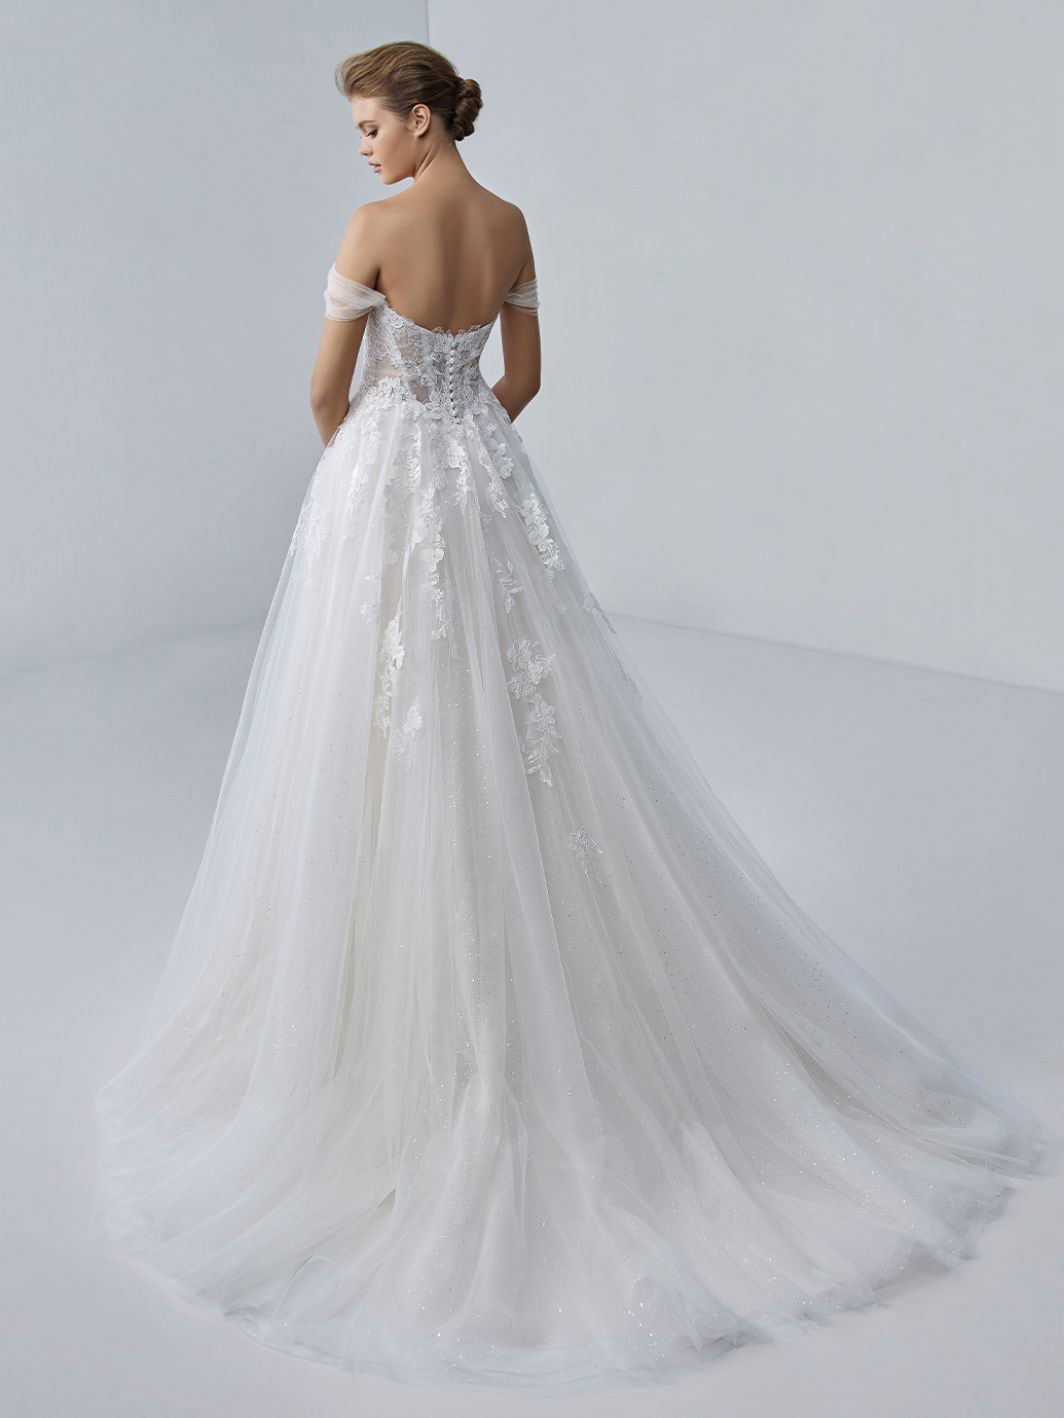 Aurora wedding dress by Elysee